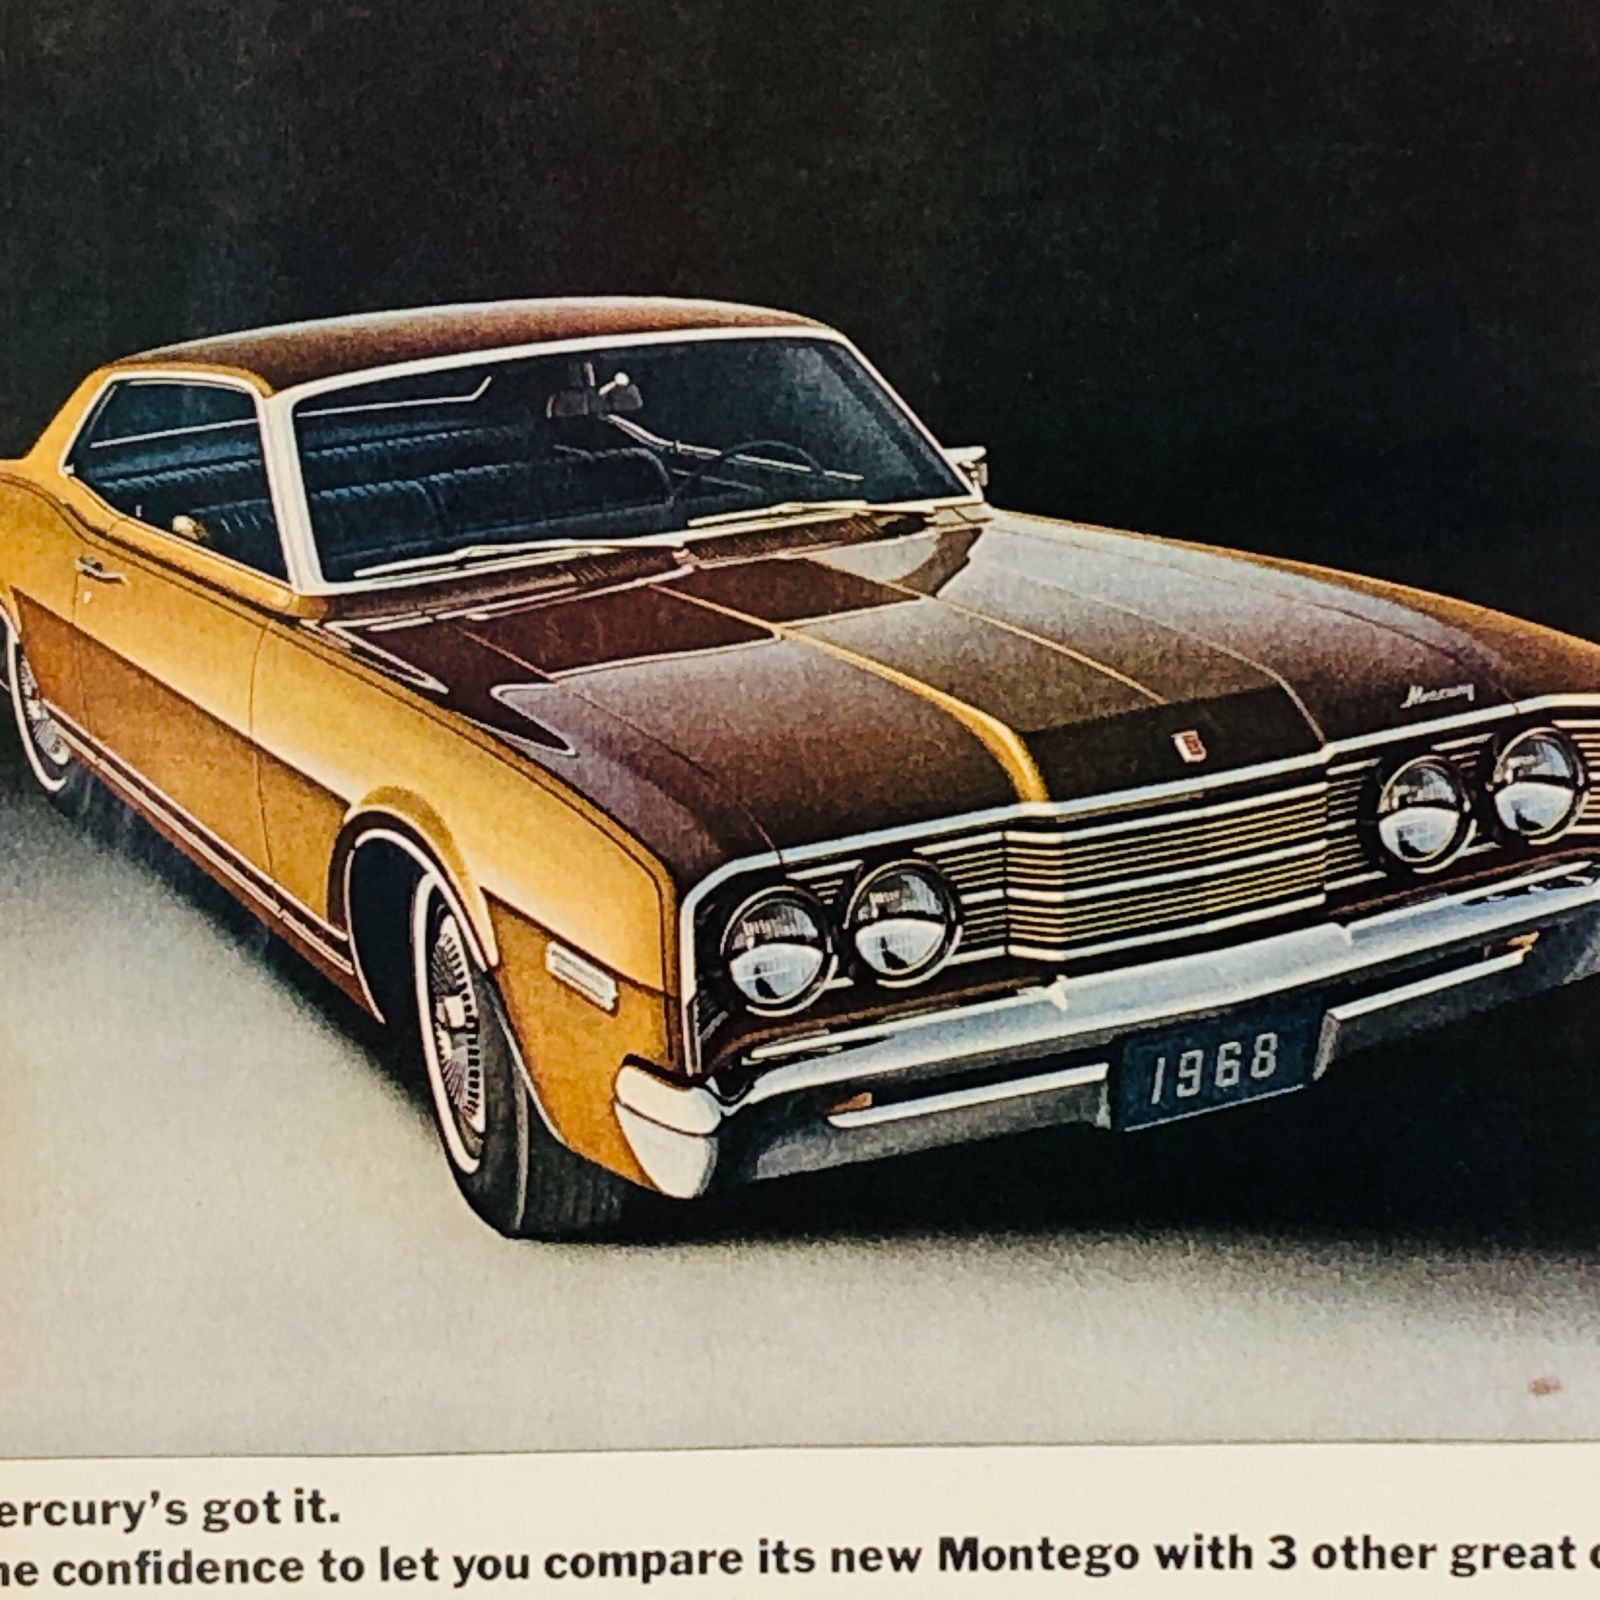 貴重な当時物 ビンテージ 広告 フレーム付 『 フォードマーキュリーFORD 』 1960年代 オリジナル アメリカ 輸入雑貨 ヴィンテージ 海外雑誌  アドバタイジング レトロ ( AZ1445 ) - メルカリ